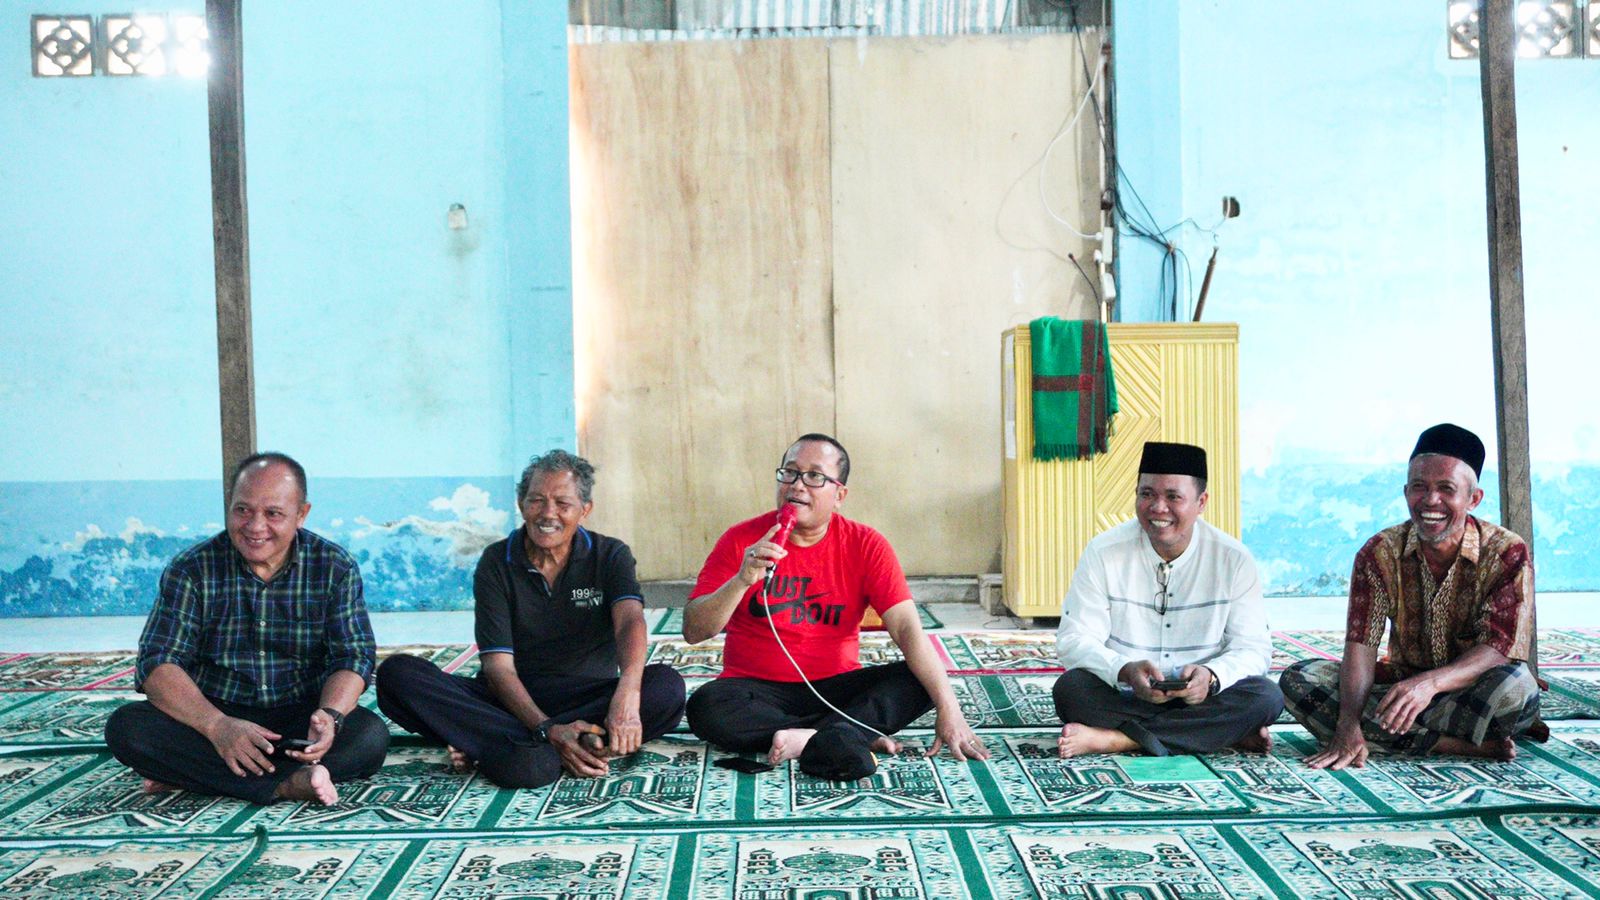 Wakil Bupati Kubu Raya, Sujiwo berdialog bersama masyarakat Kecamatan Sungai Kakap. (Foto: Jauhari)